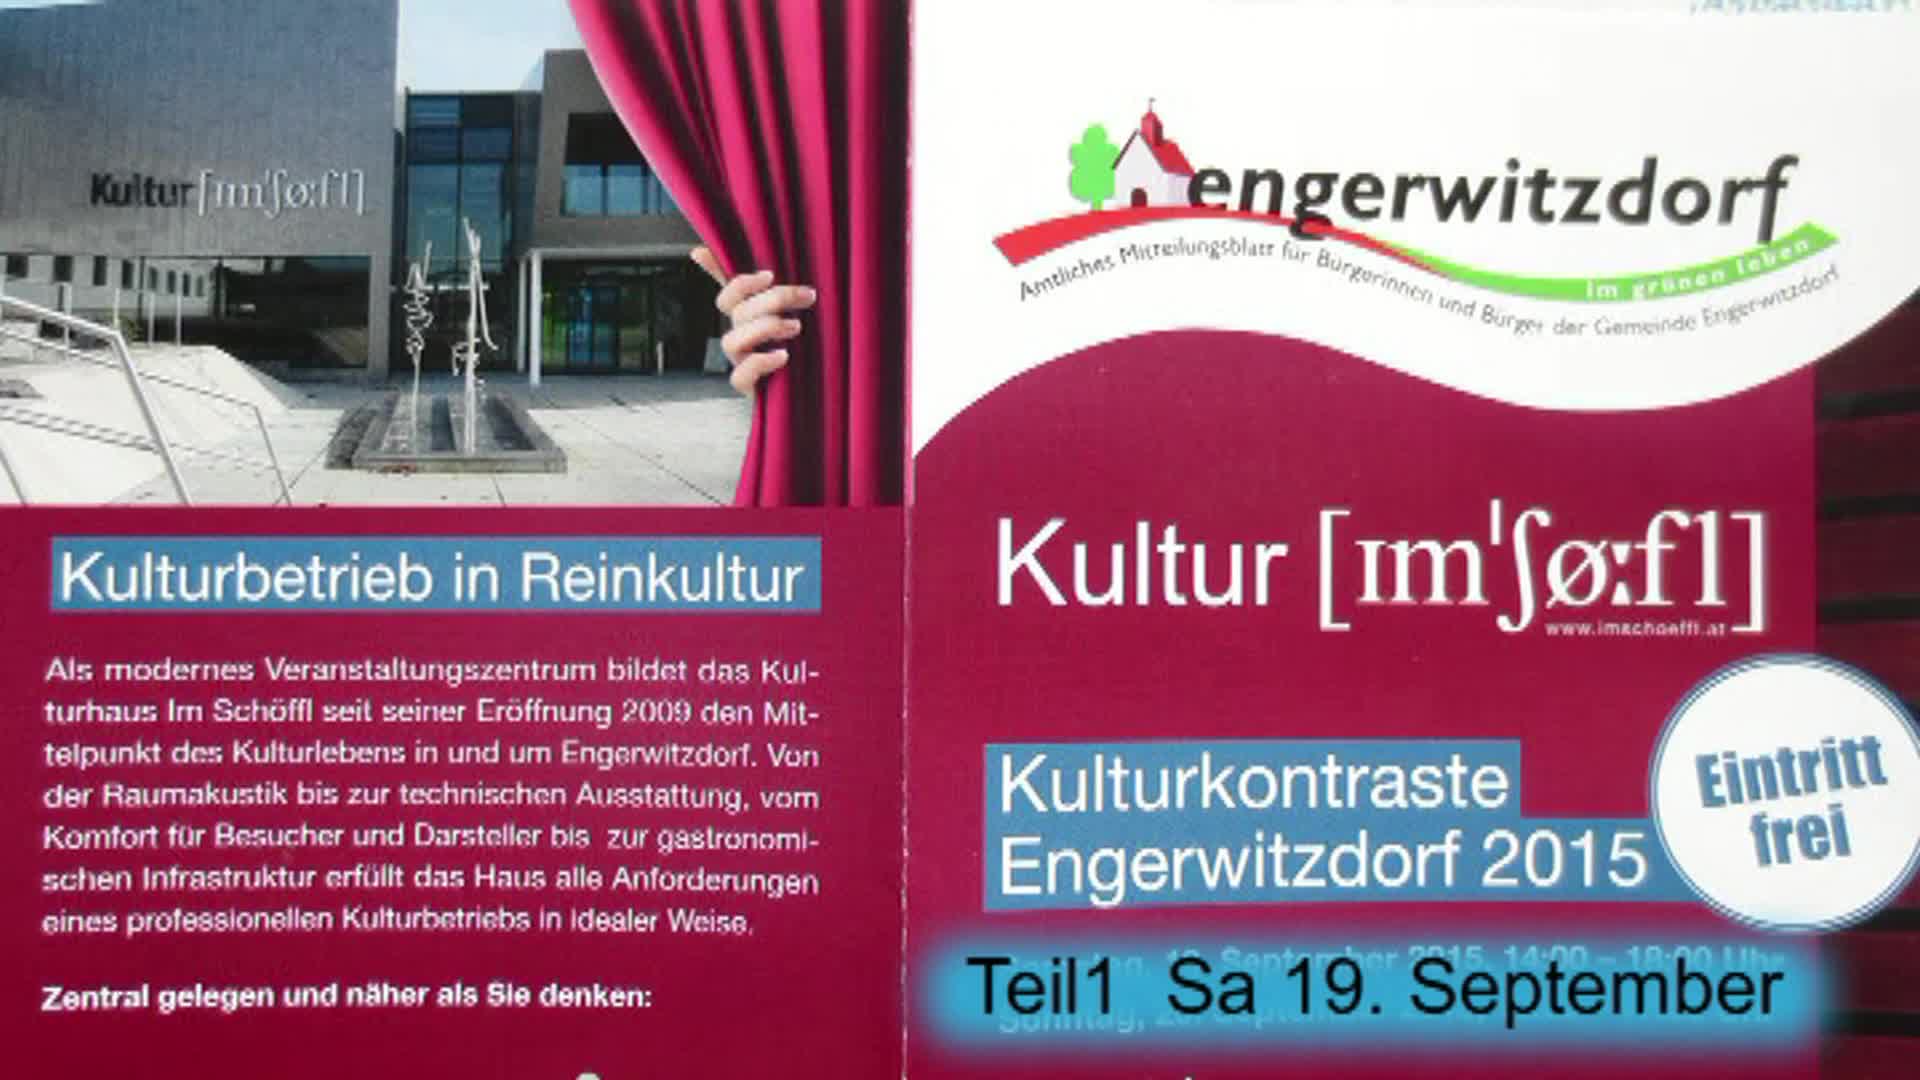 Kulturkontraste Engerwitzdorf 2015 - Teil 1 